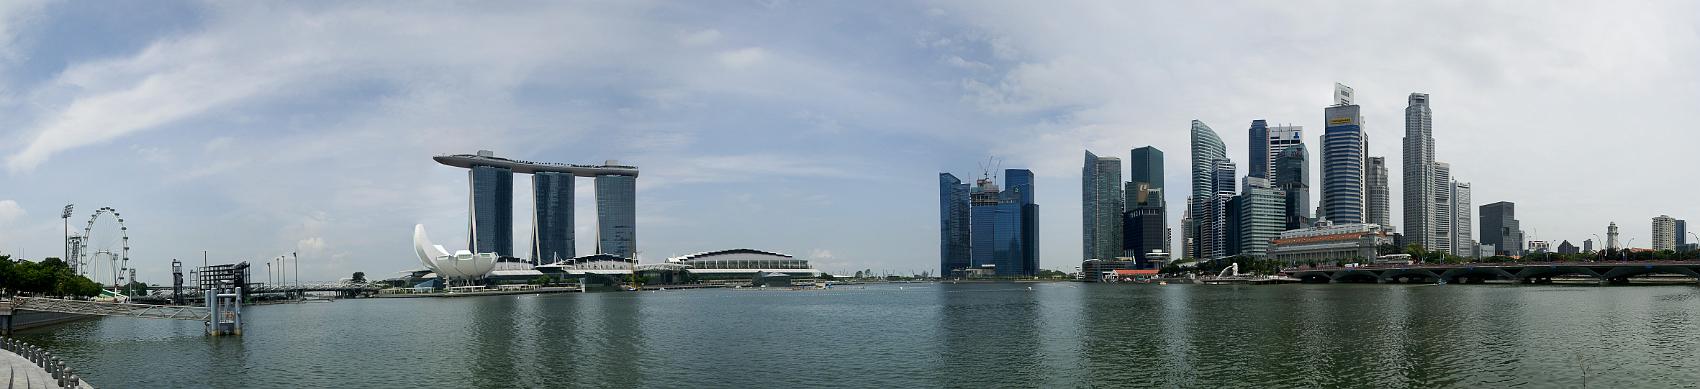 20110622-Singapore-Panorama-2.JPEG